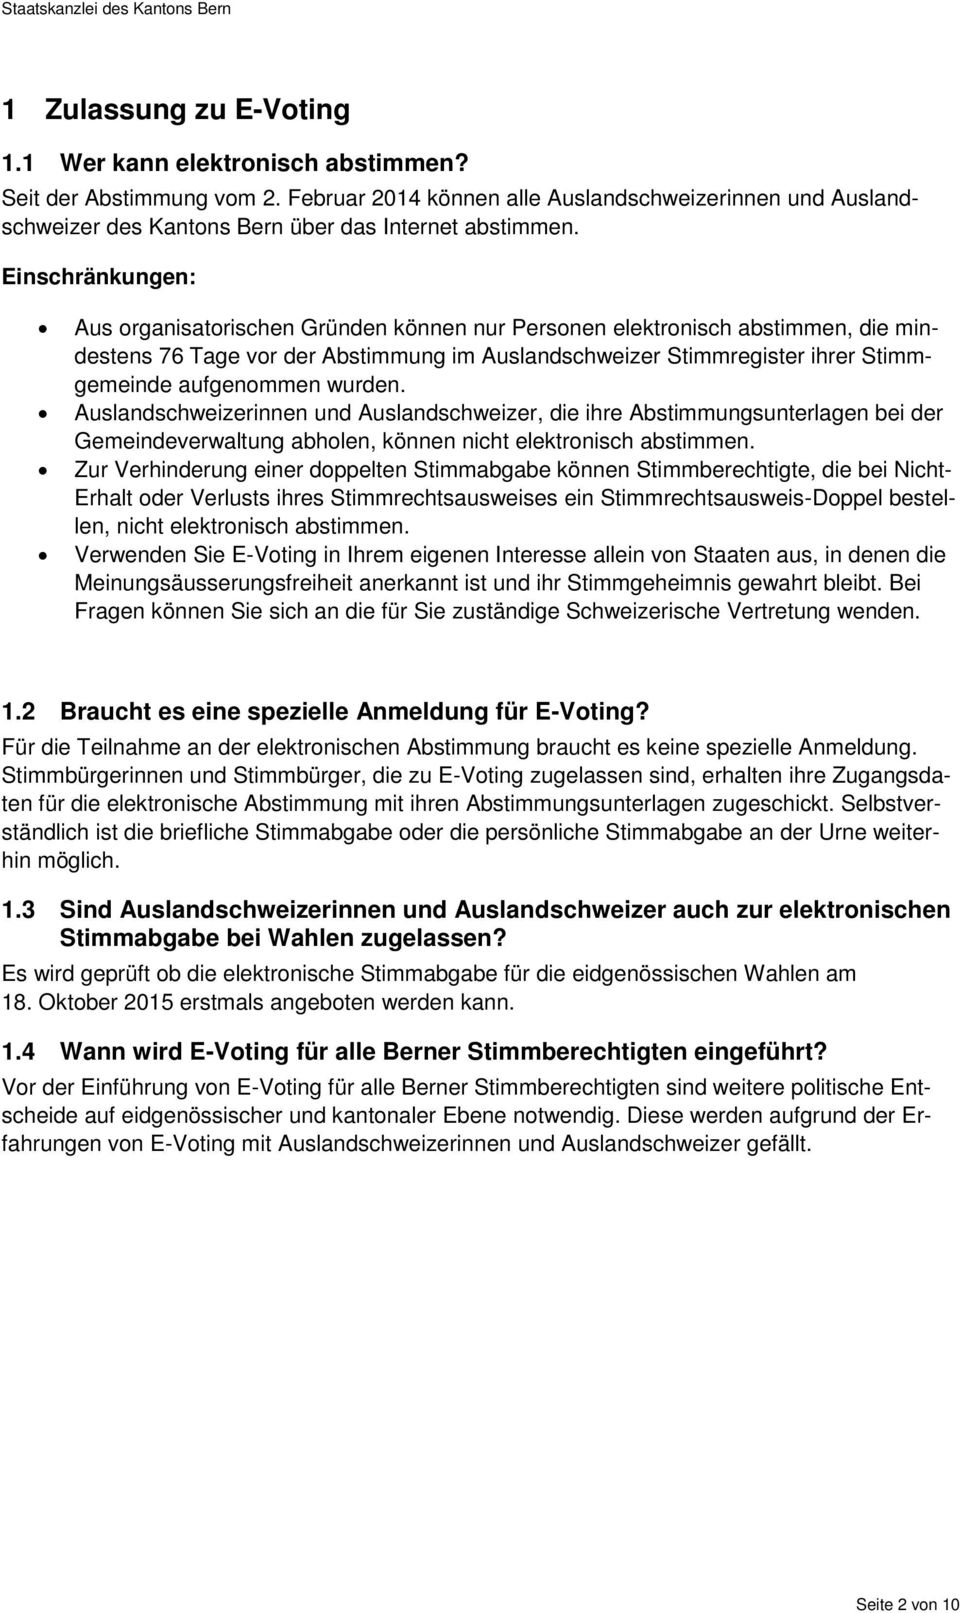 Einschränkungen: Aus organisatorischen Gründen können nur Personen elektronisch abstimmen, die mindestens 76 Tage vor der Abstimmung im Auslandschweizer Stimmregister ihrer Stimmgemeinde aufgenommen